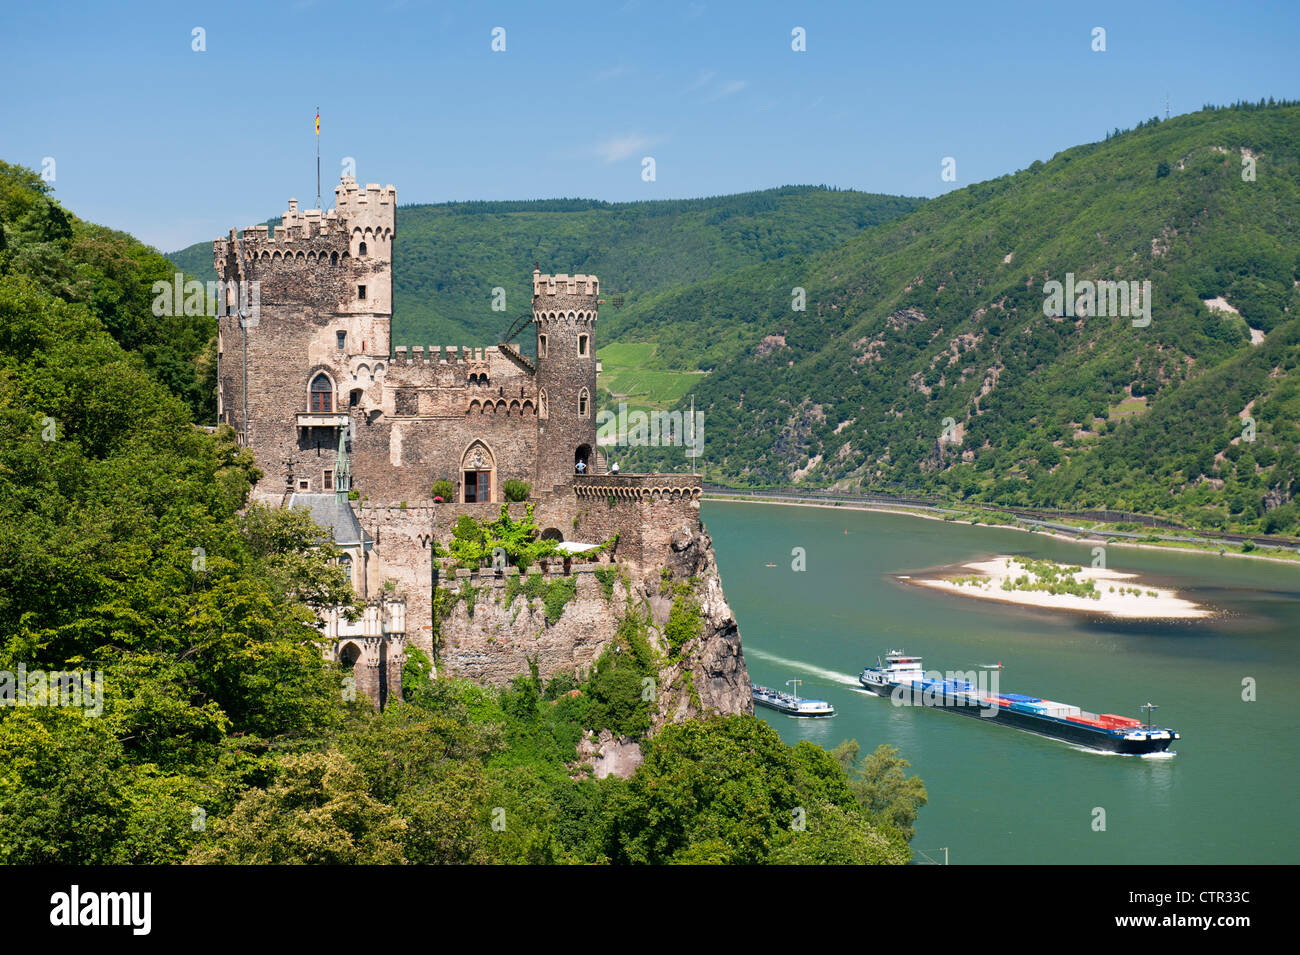 Burg Rheinstein castillo por encima del río Rin en Alemania Foto de stock